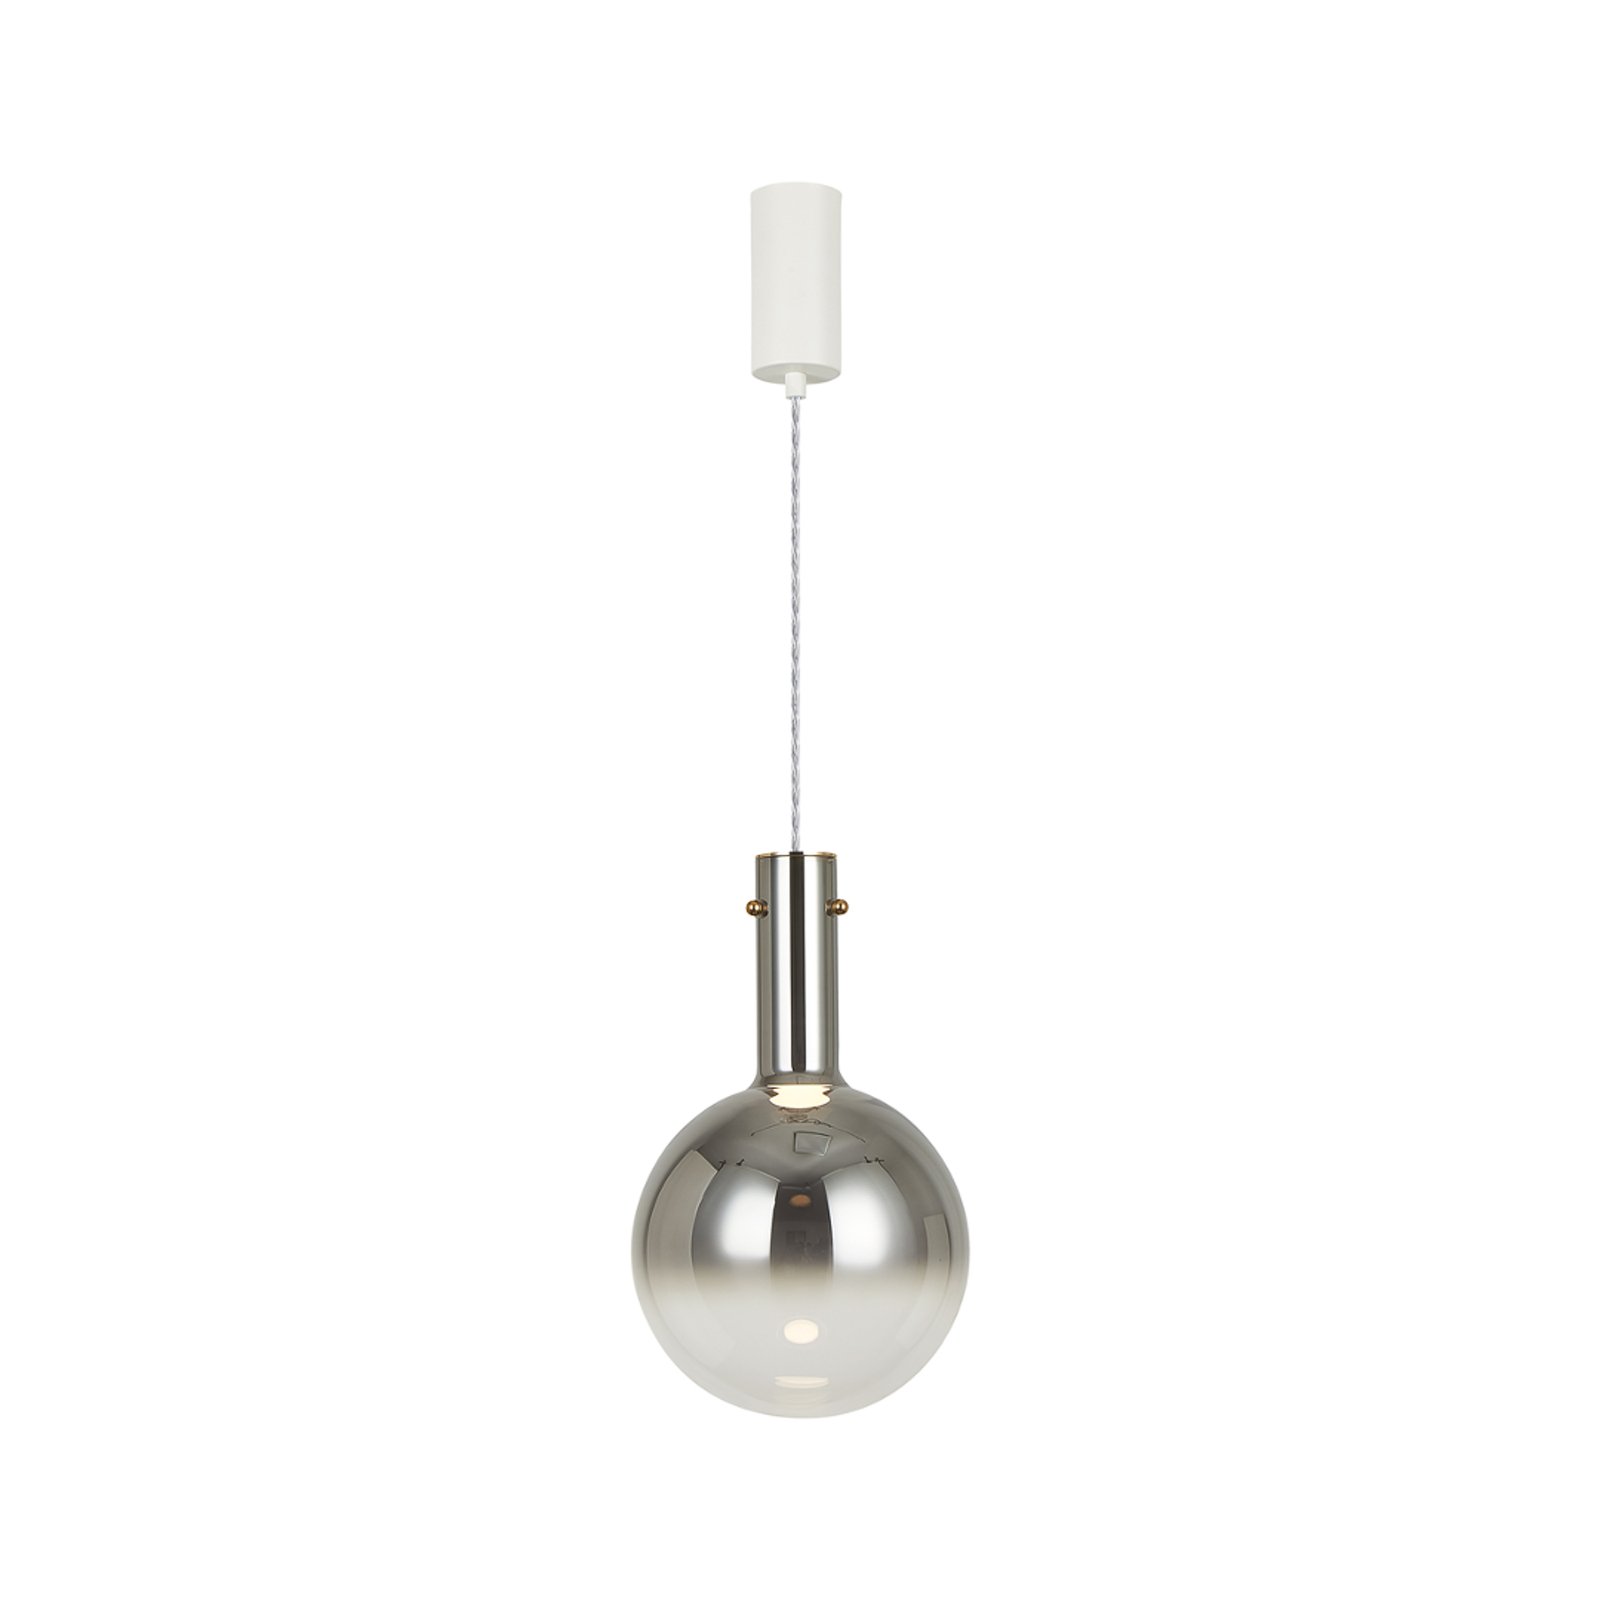 Toronto hanglamp, chroom-transparante glazen bol, Ø 25 cm